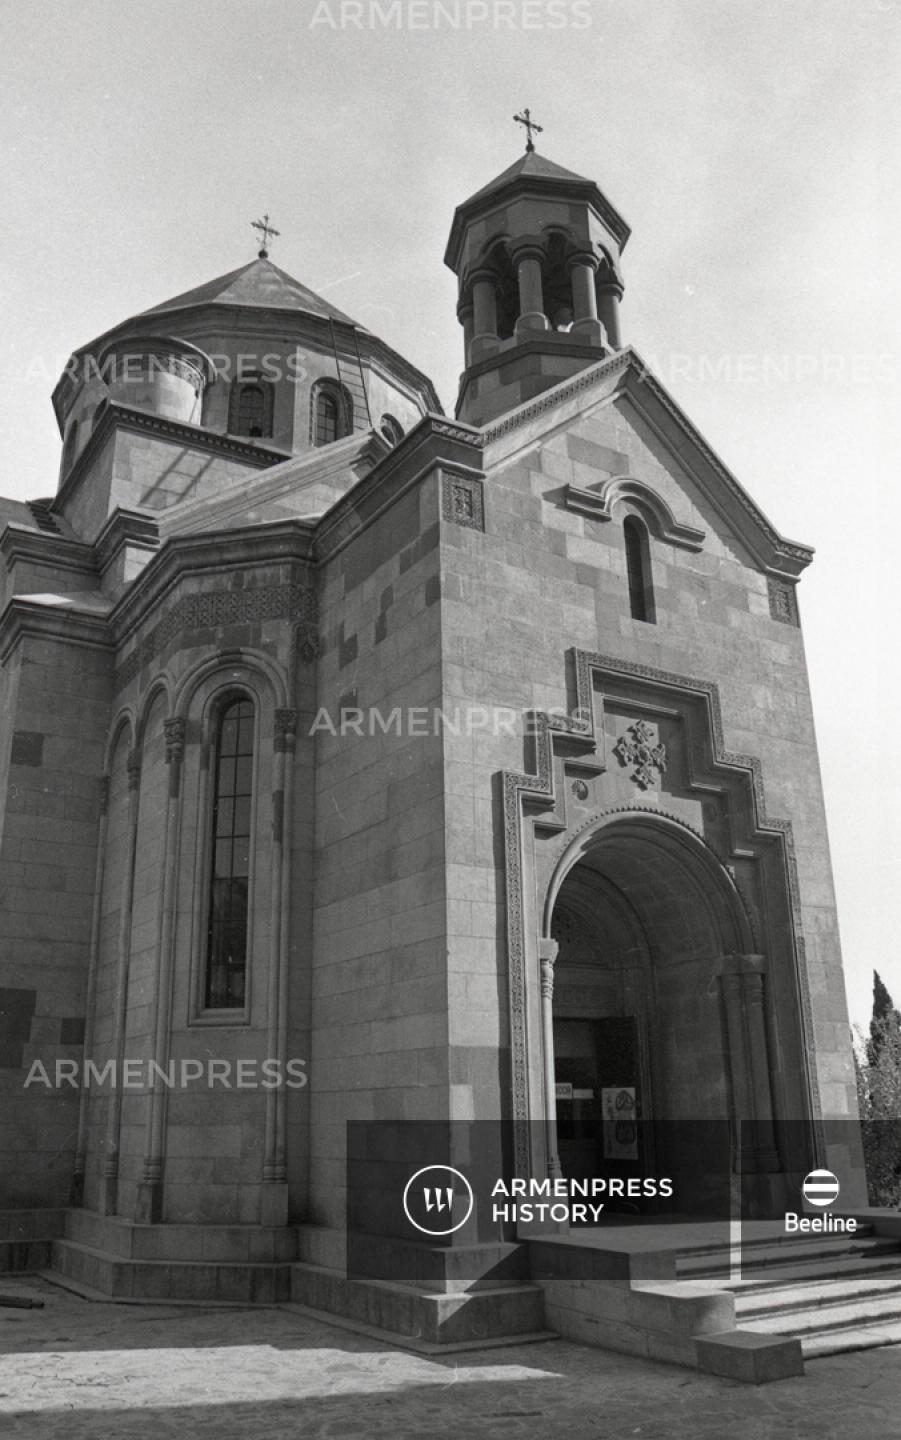 Հայկական եկեղեցի Սիմֆերոպոլում